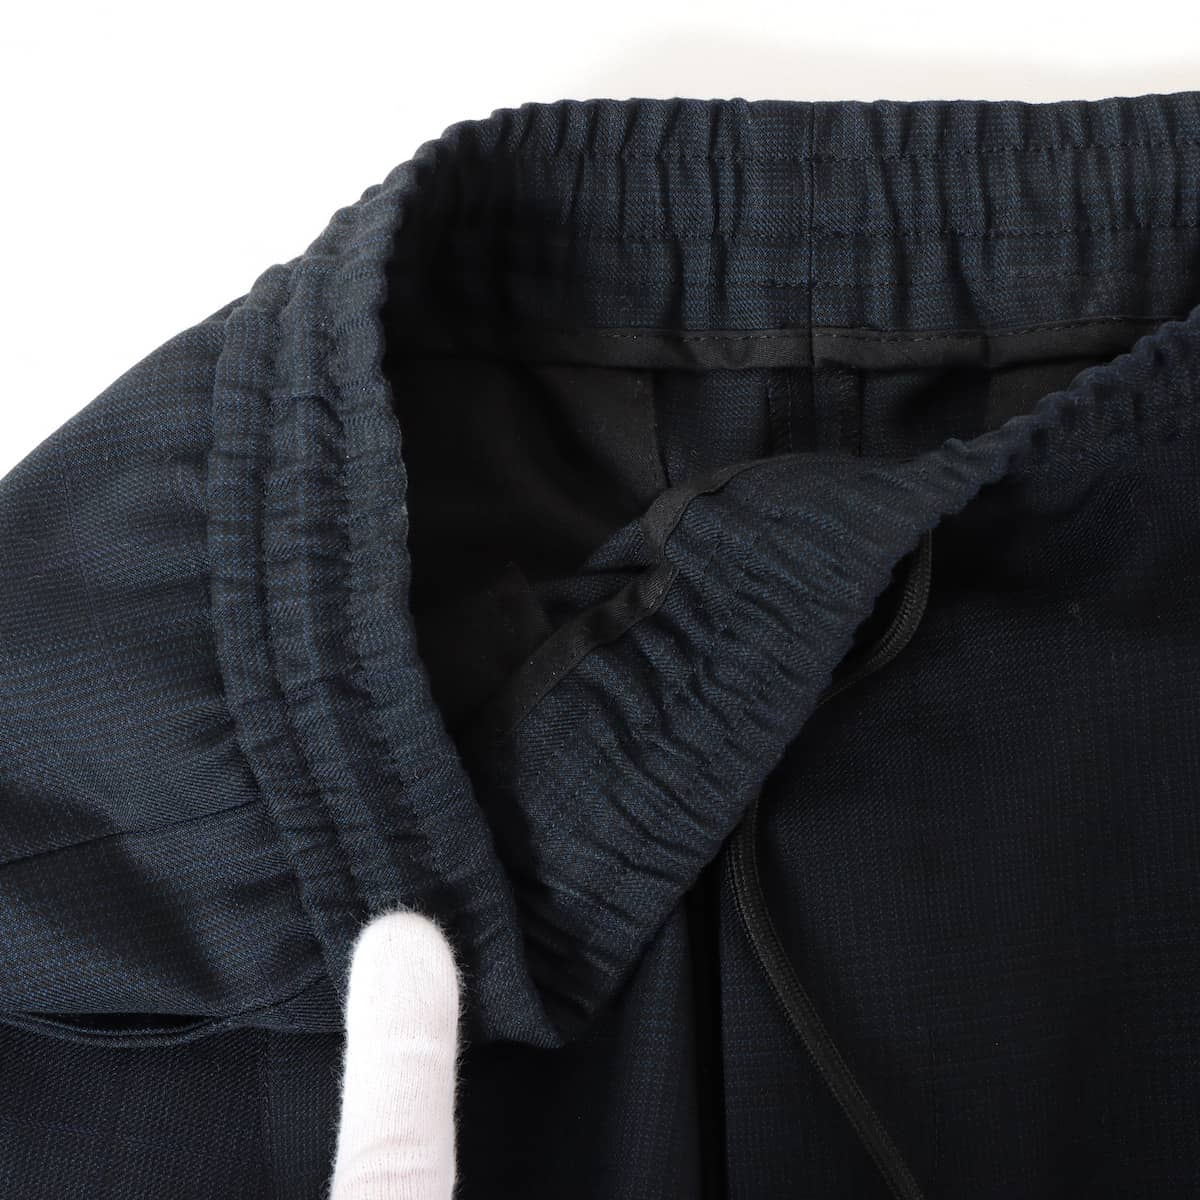 ディオール ウール パンツ 42 メンズ ブラック×ネイビー  裾ジップ ロゴドローコード